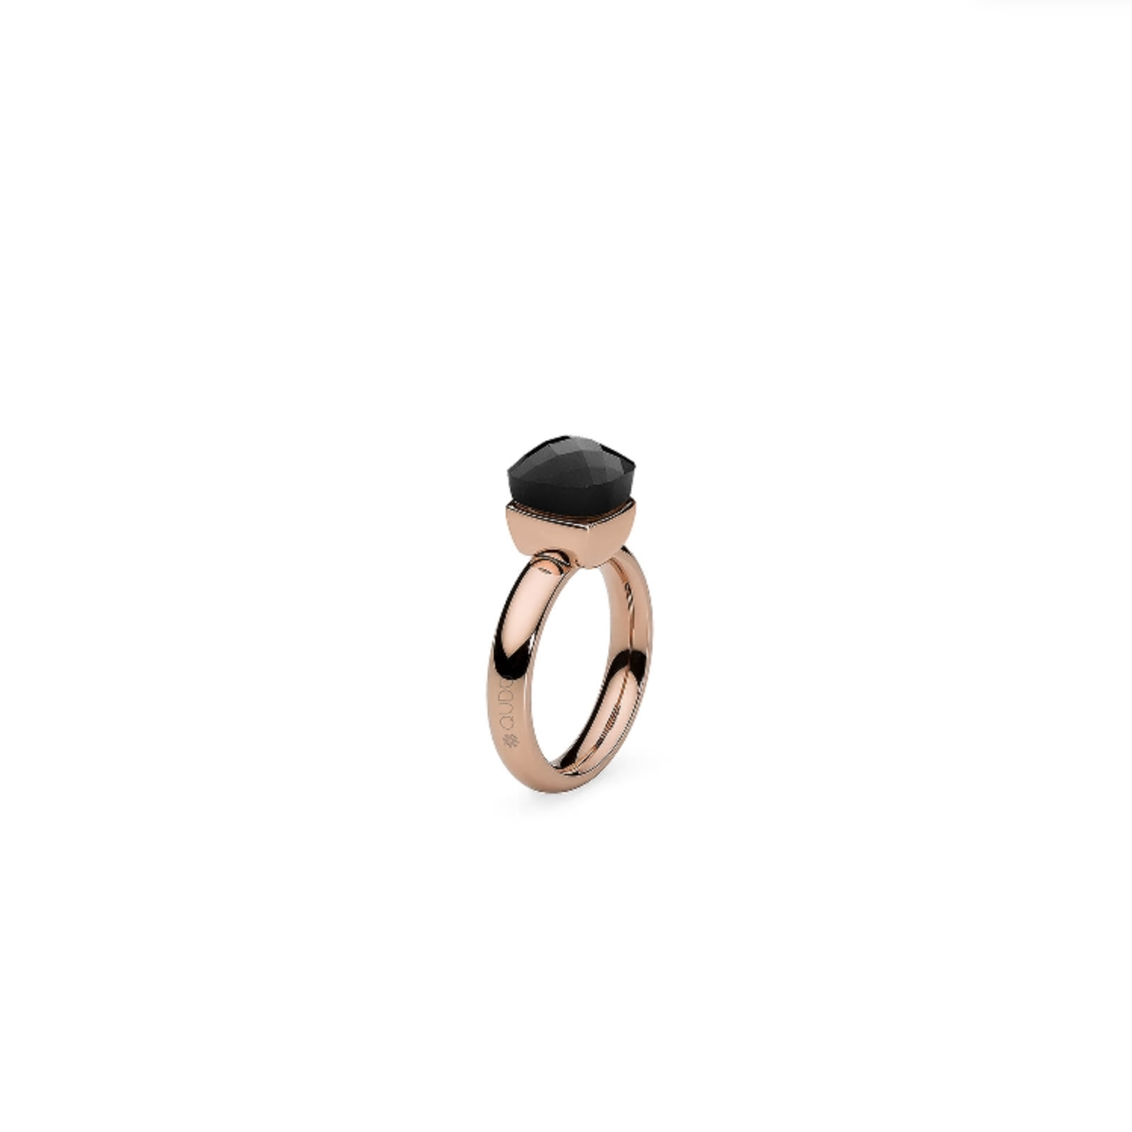 Dies ist ein Ring der Marke Qudo, Modell Firenze. Er hat eine Farbkombination aus Jet und Roségold. Der Ring strahlt Eleganz und Klasse aus und ist ideal für besondere Anlässe oder als alltägliches Accessoire